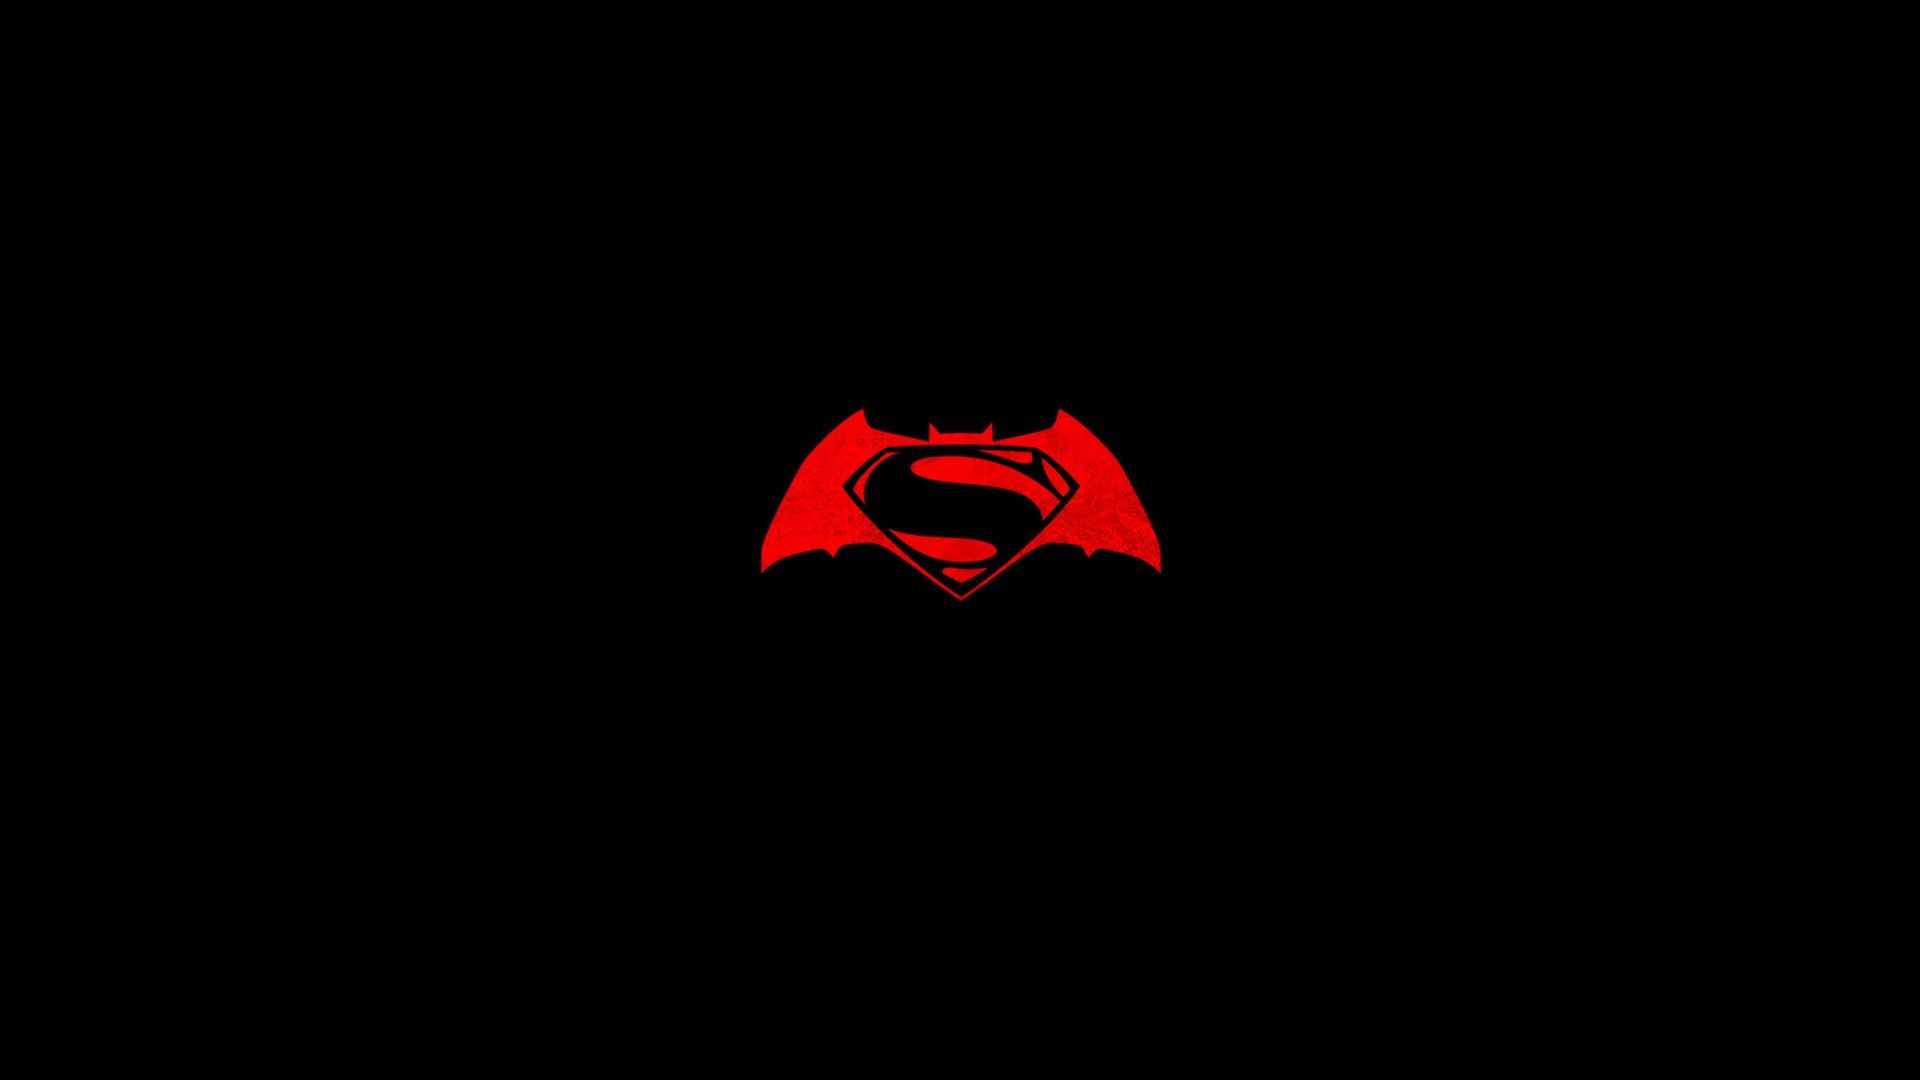 1920x1080 Download Batman V Superman Logo, Batman, Superman, Logo Wallpaper in Resoluti